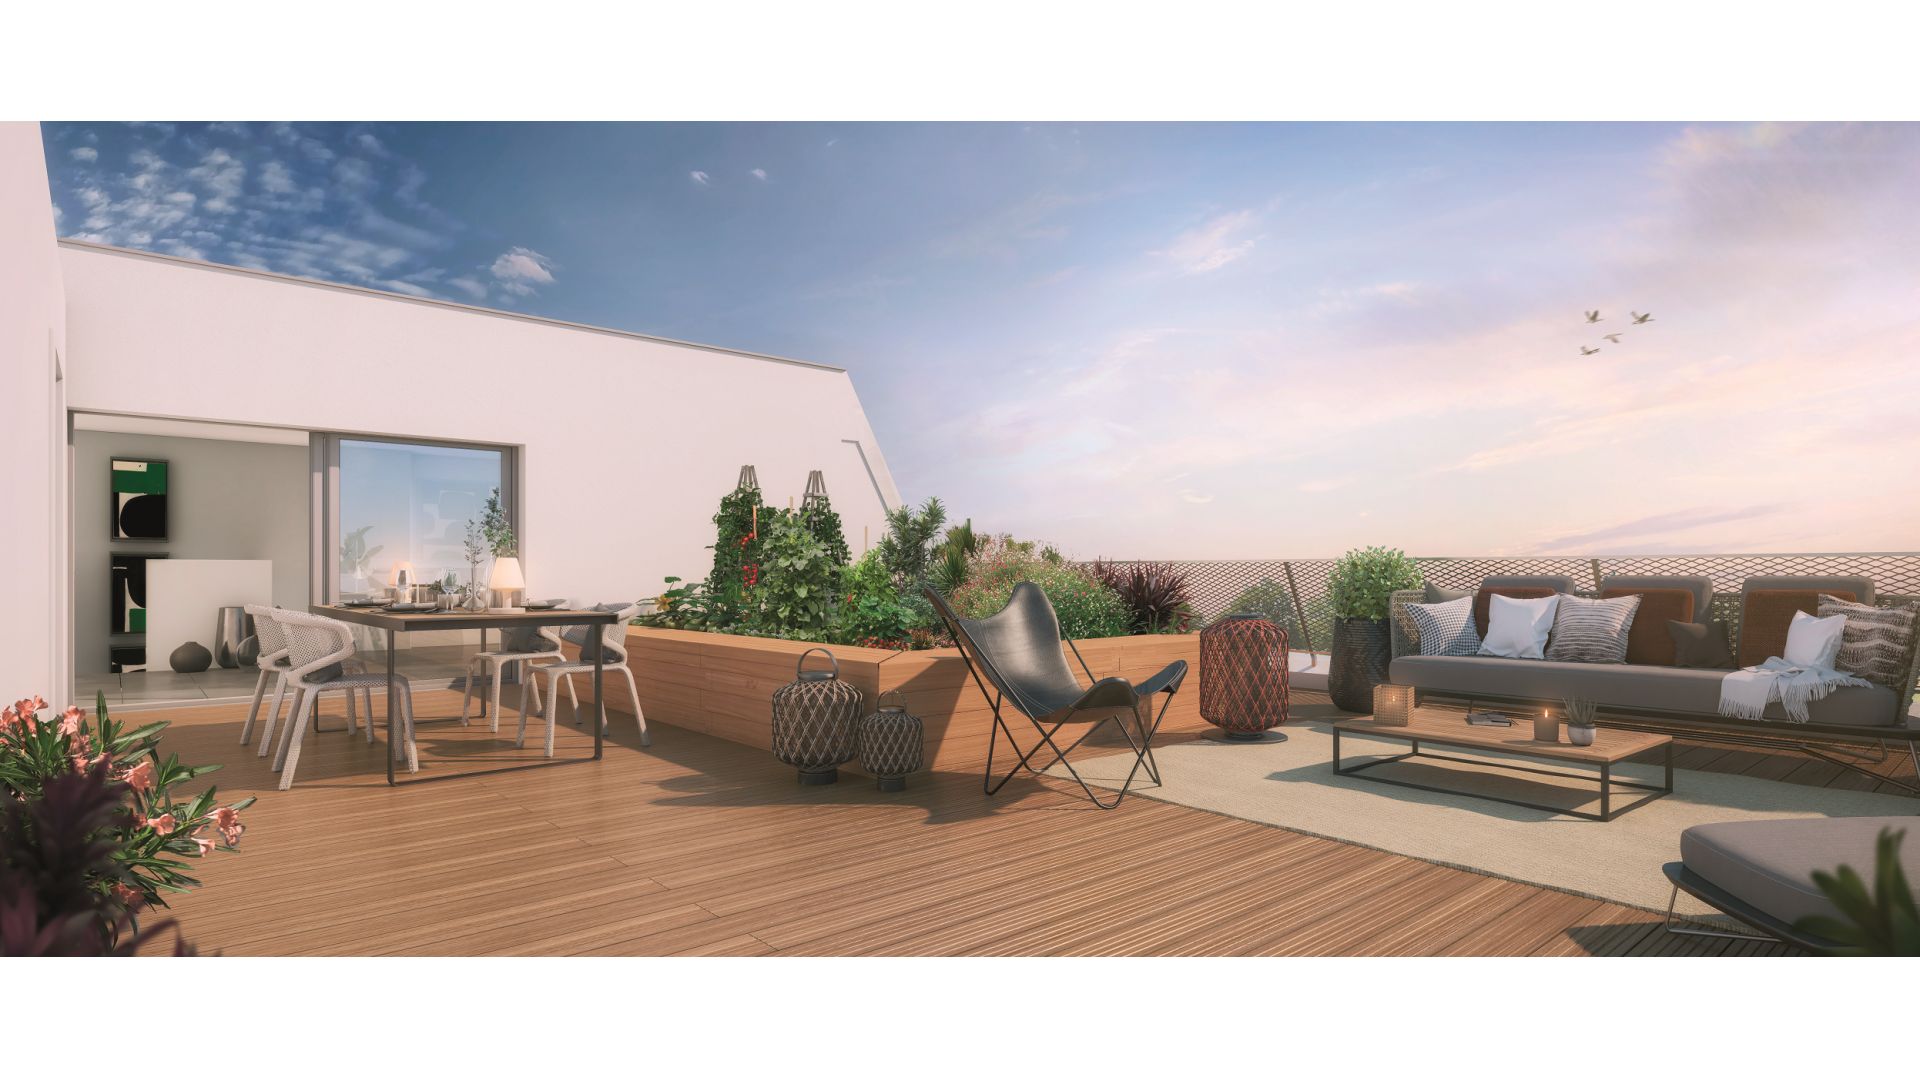 Greencity immobilier - achat appartements neufs du T1Bis au T6Duplex - Résidence MeetCity - 31700 Beauzelle - vue terrasse